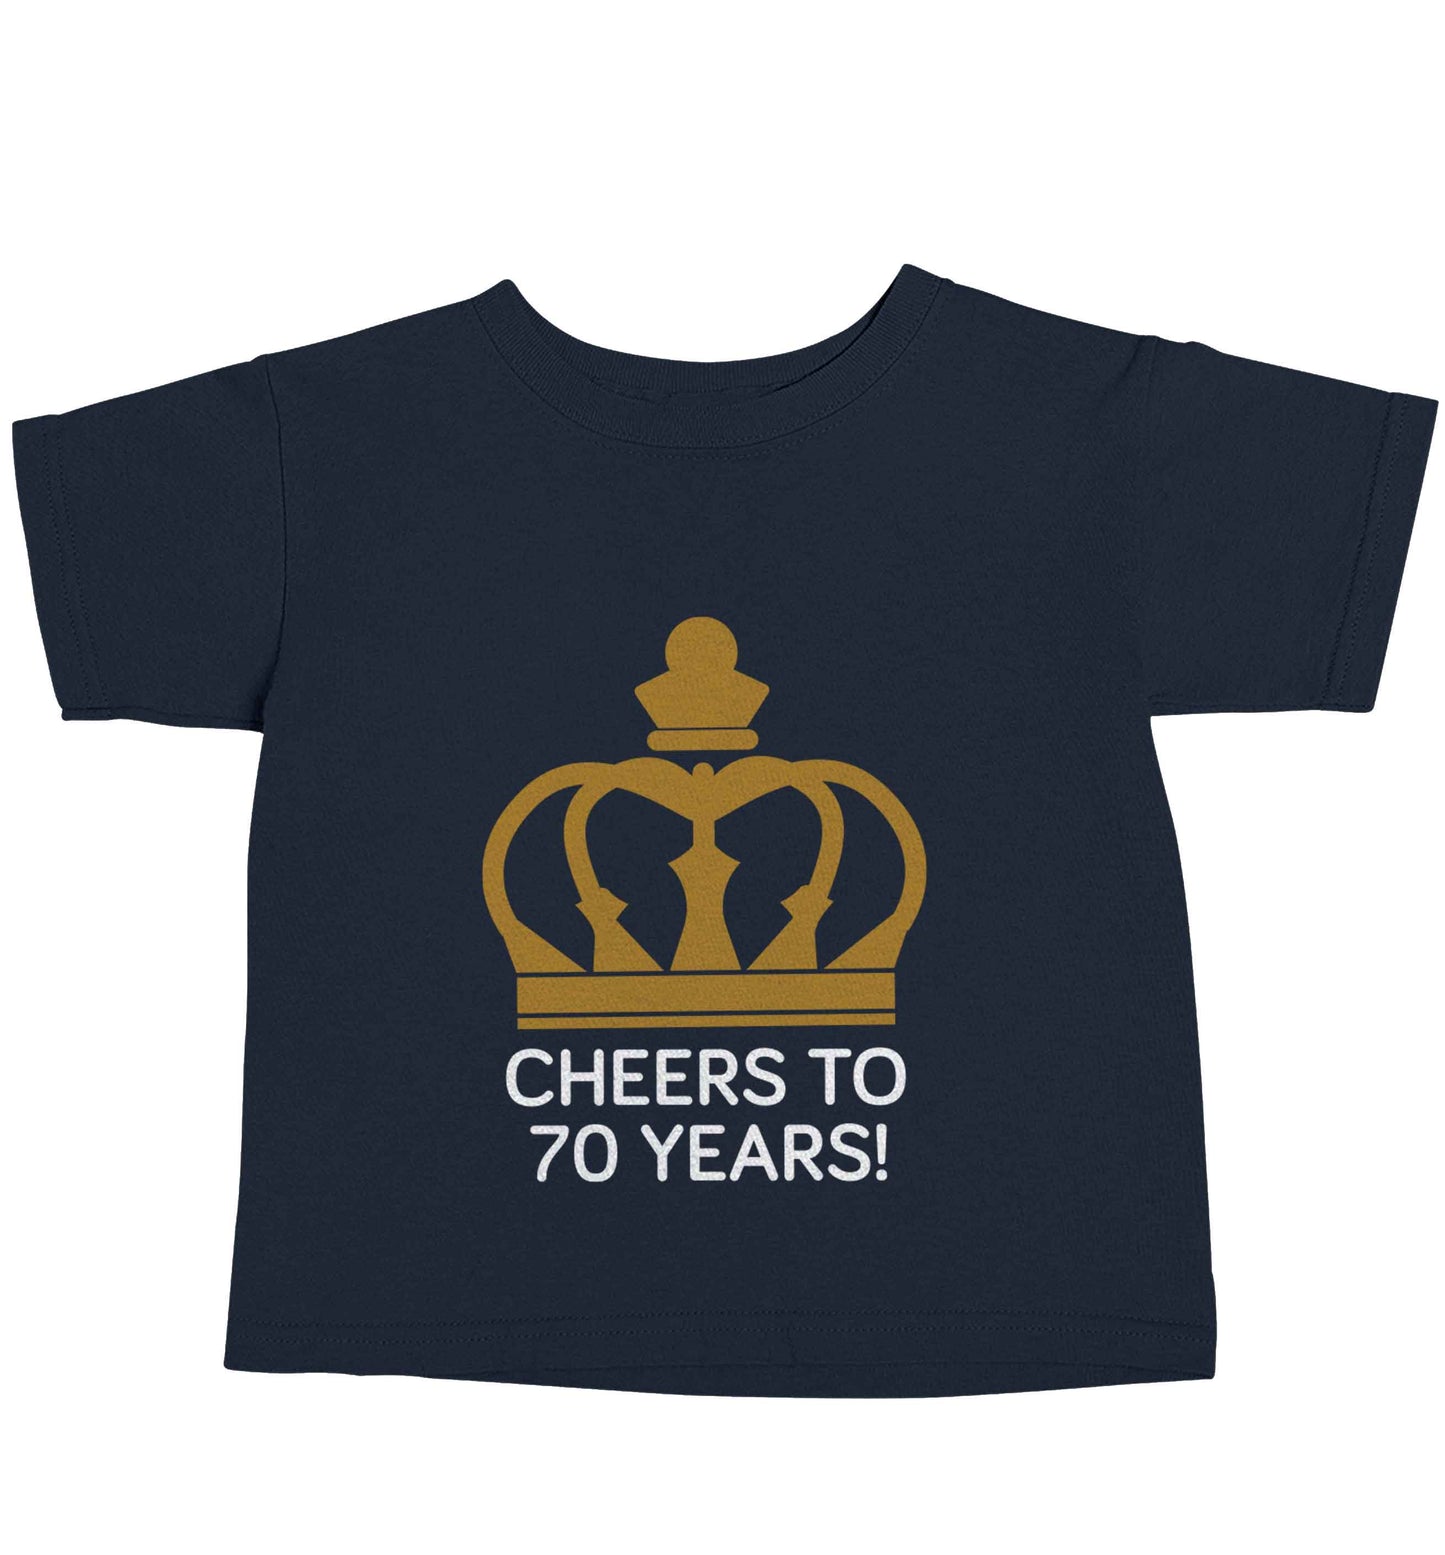 Cheers to 70 years! navy baby toddler Tshirt 2 Years